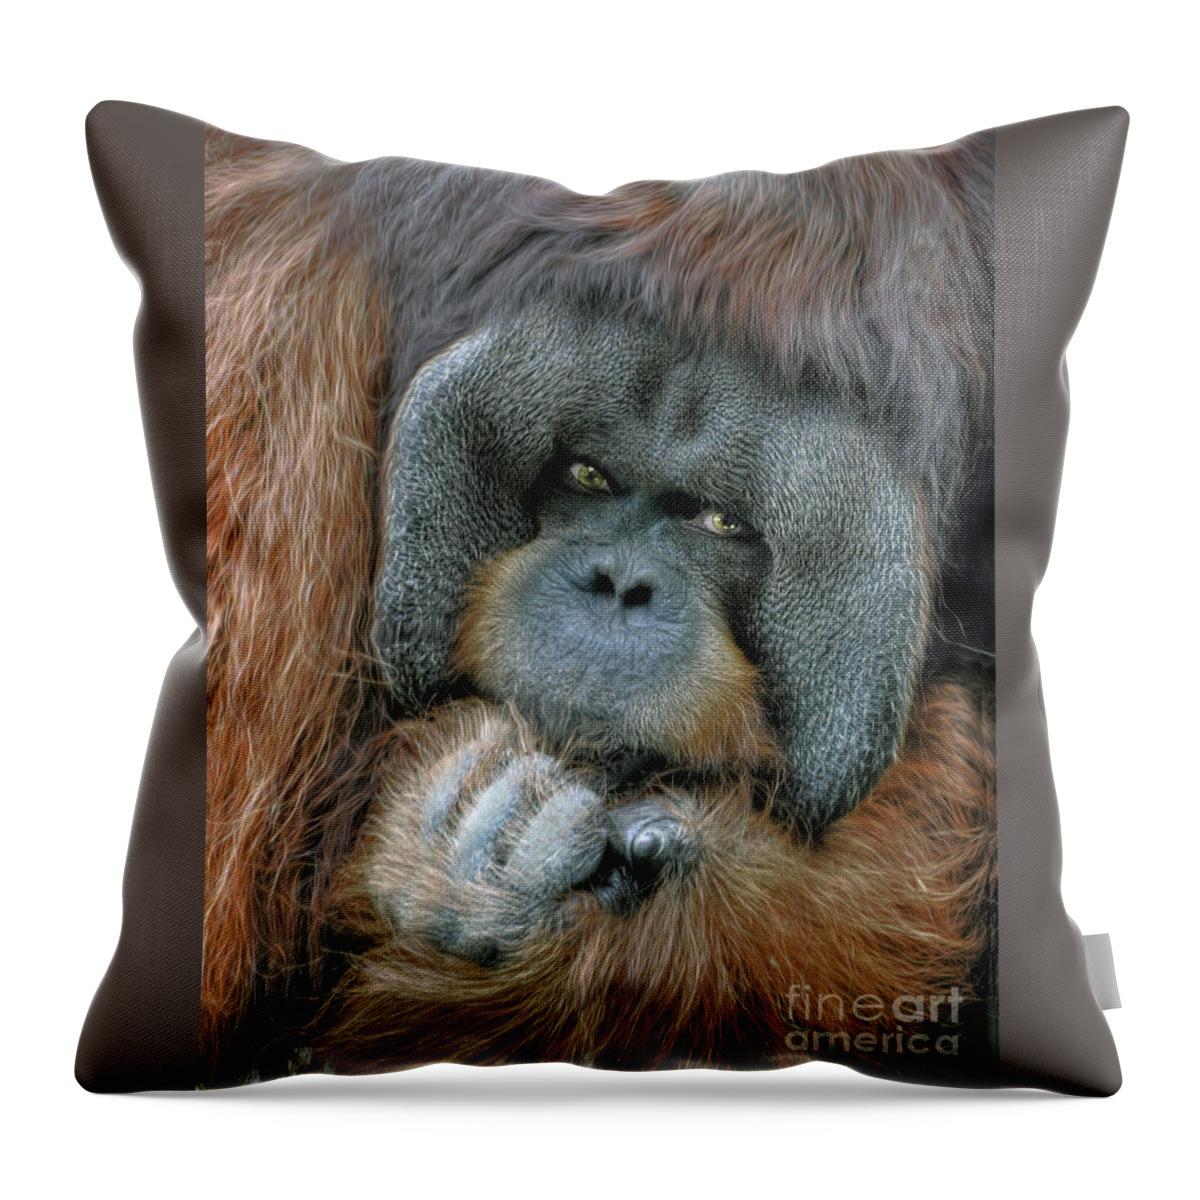 Male Throw Pillow featuring the digital art Male Orangutan by Savannah Gibbs